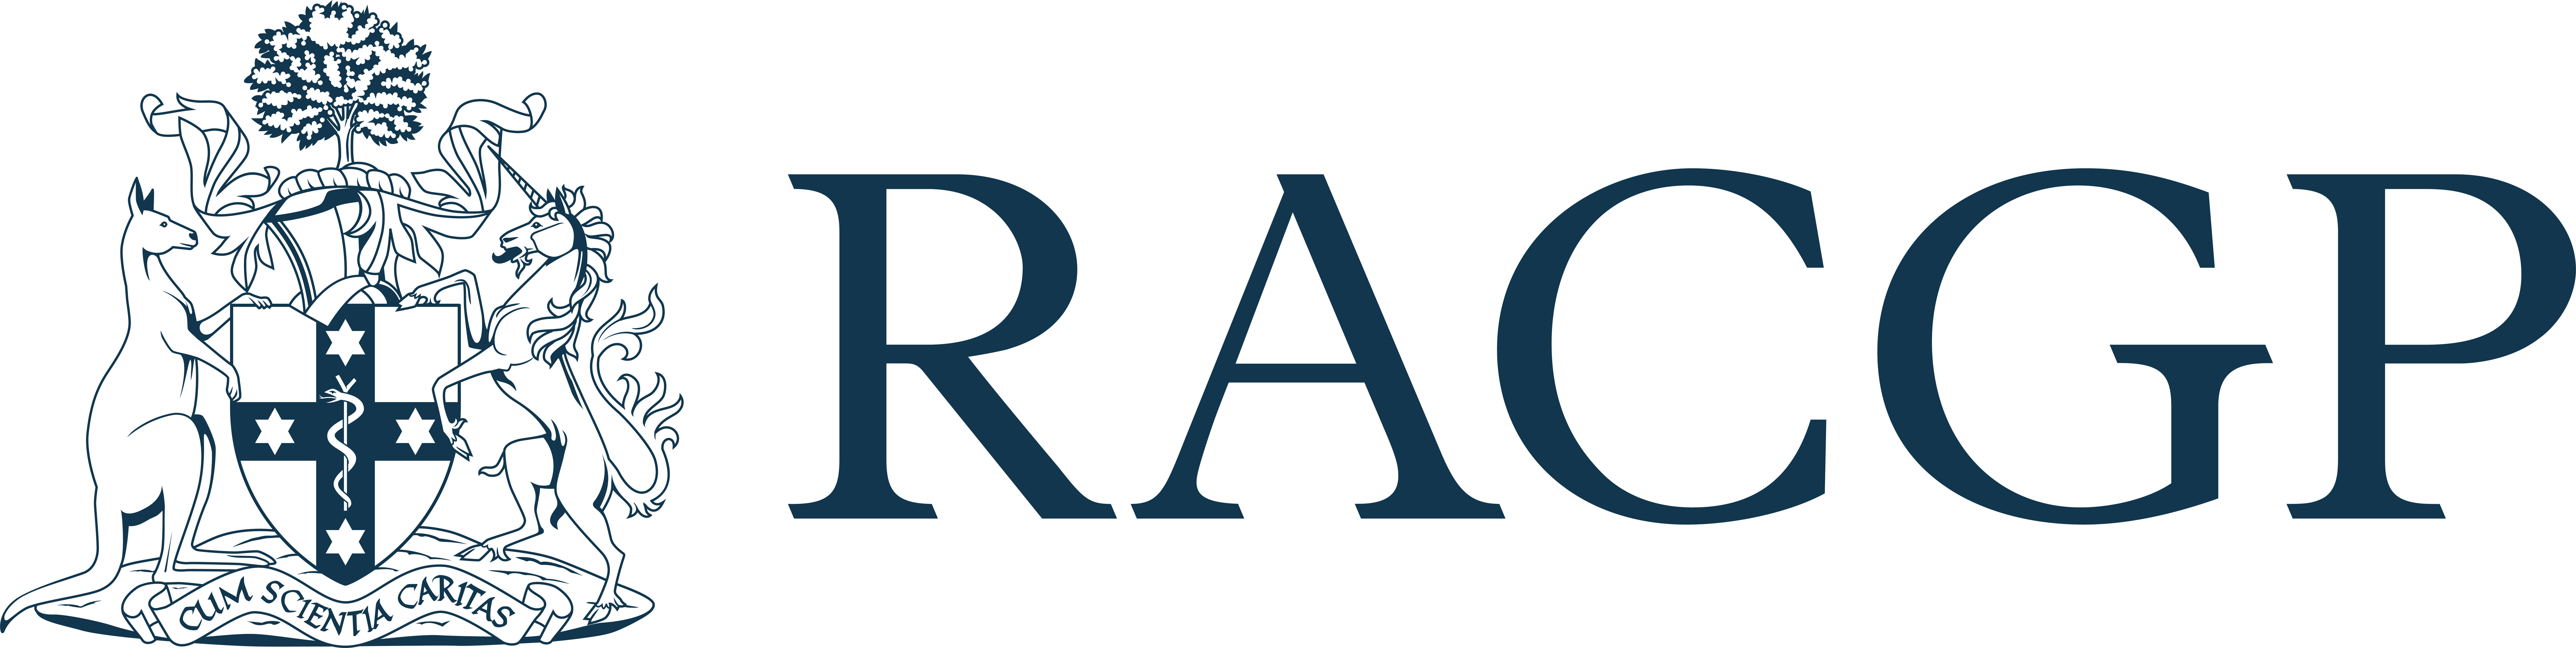 RACGP website